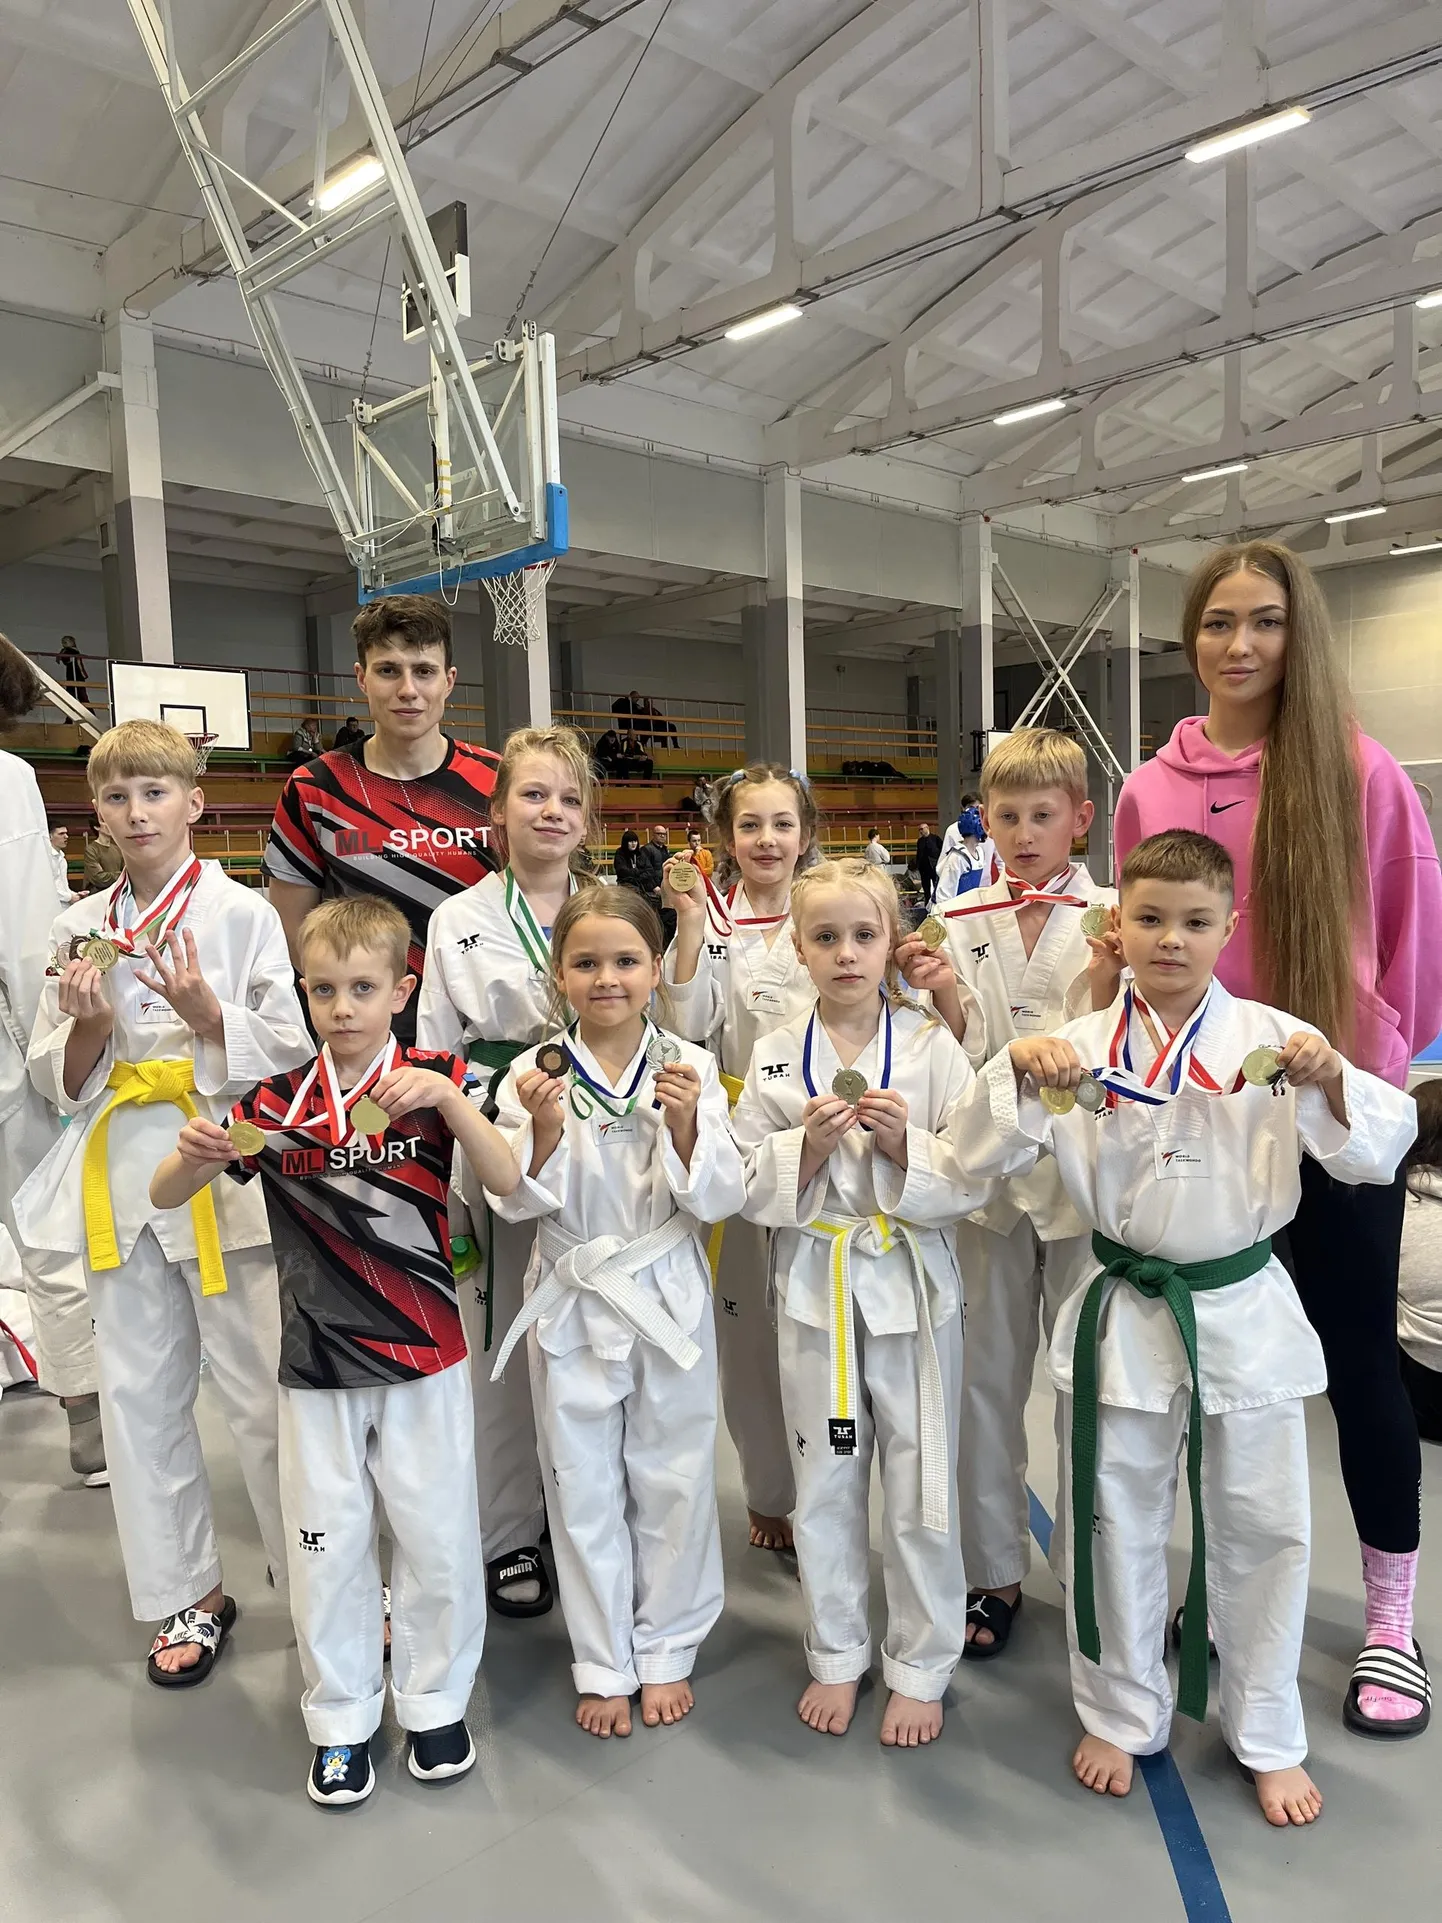 Lätis toimunud turniiril osalesid ka ML Spordi noored.